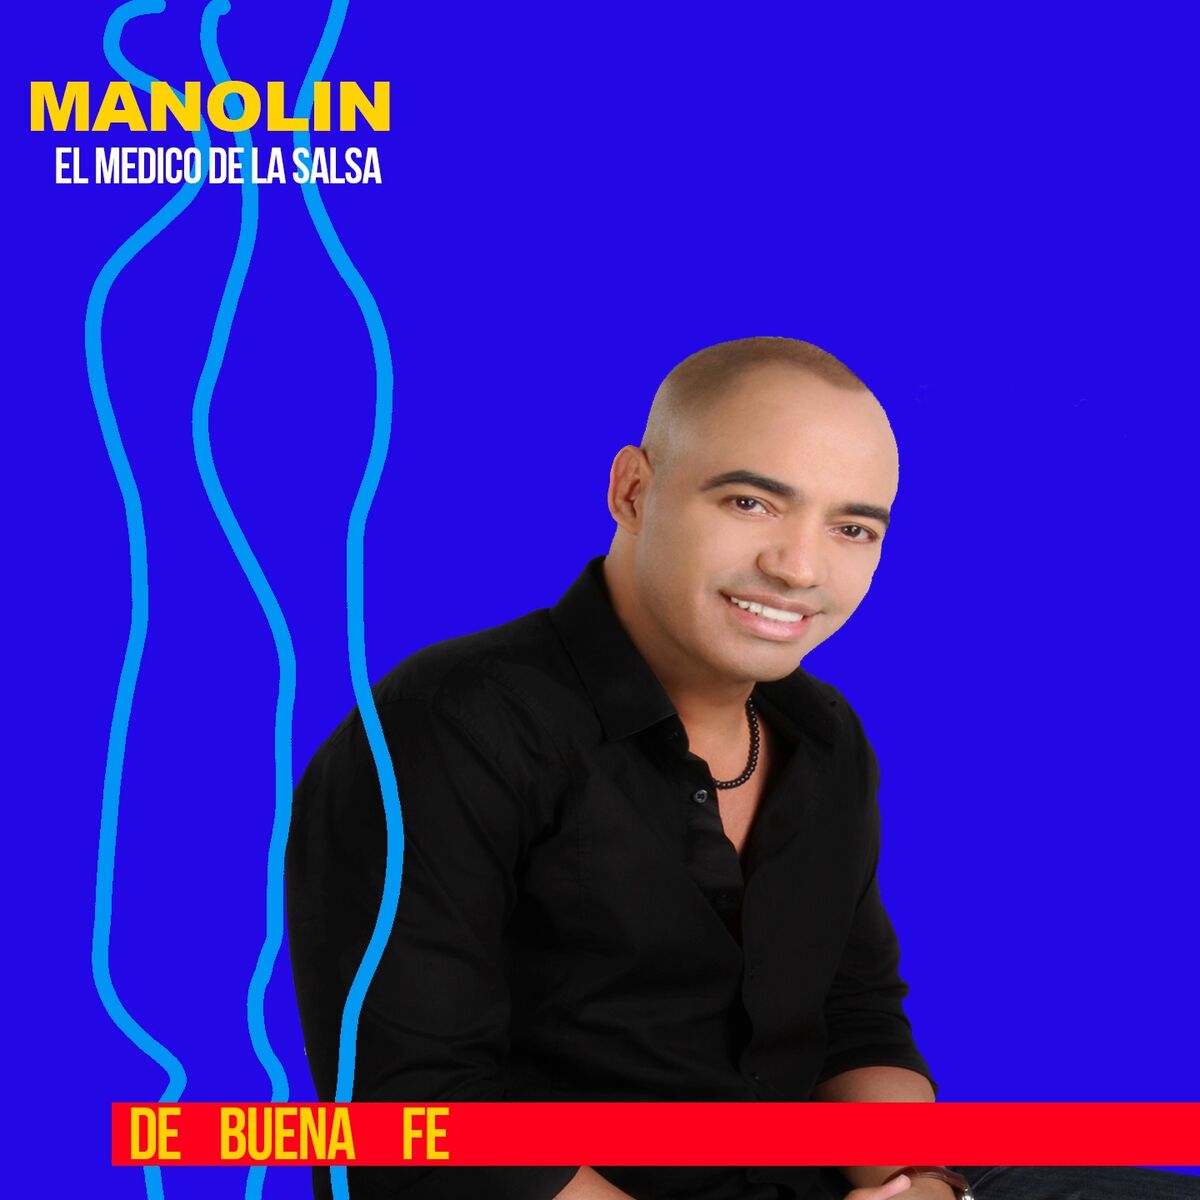 Manolin El Medico De La Salsa: albums